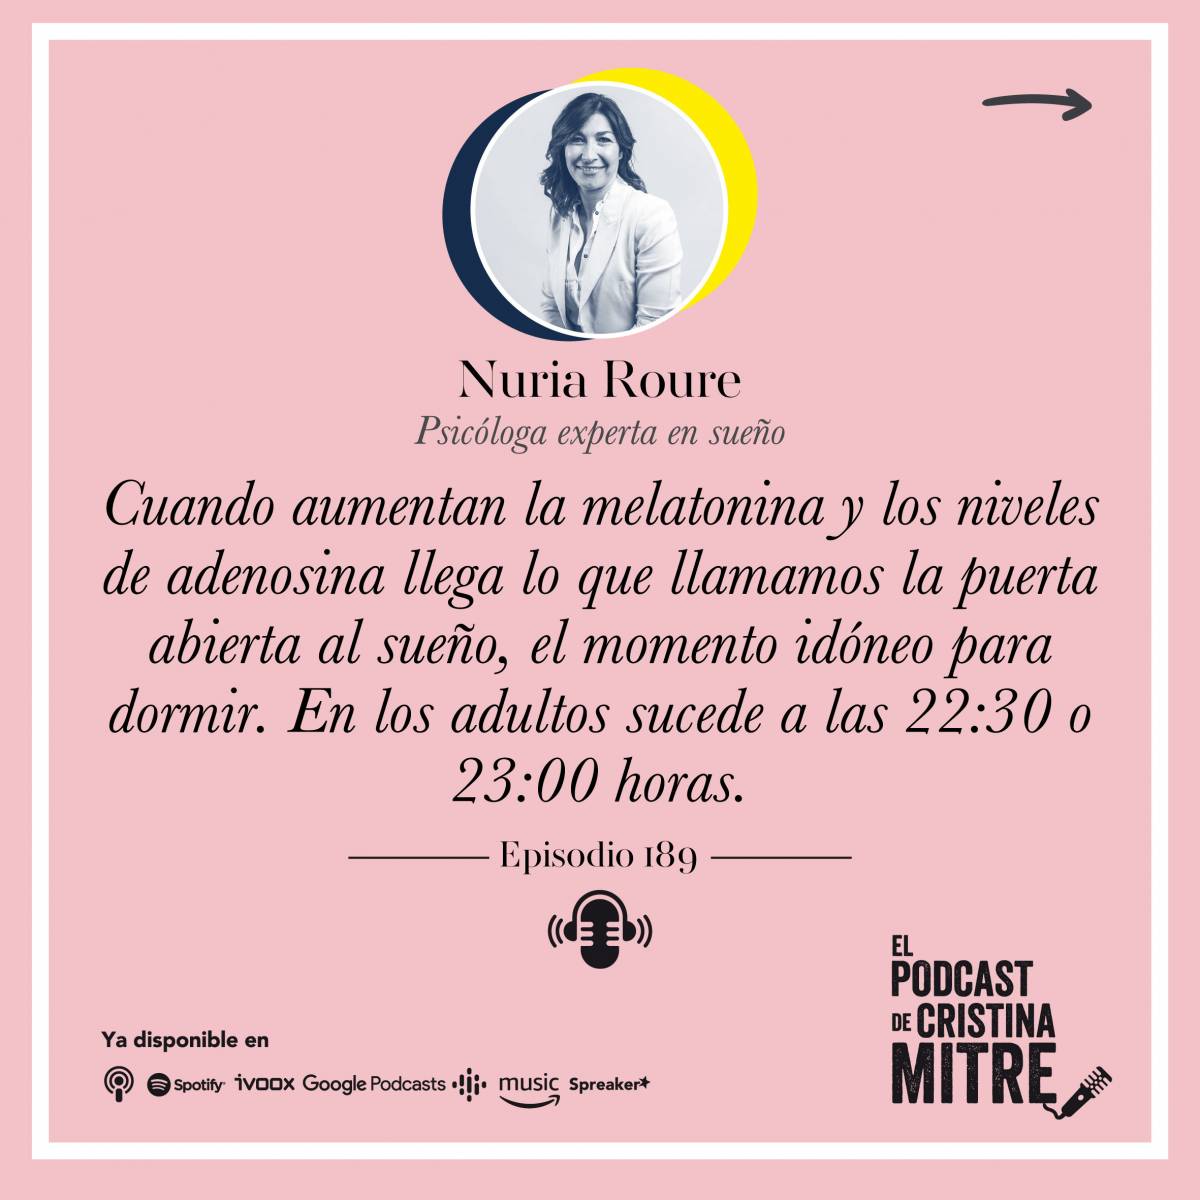 El podcast de Cristina Mitre Nuria Roure malatonina